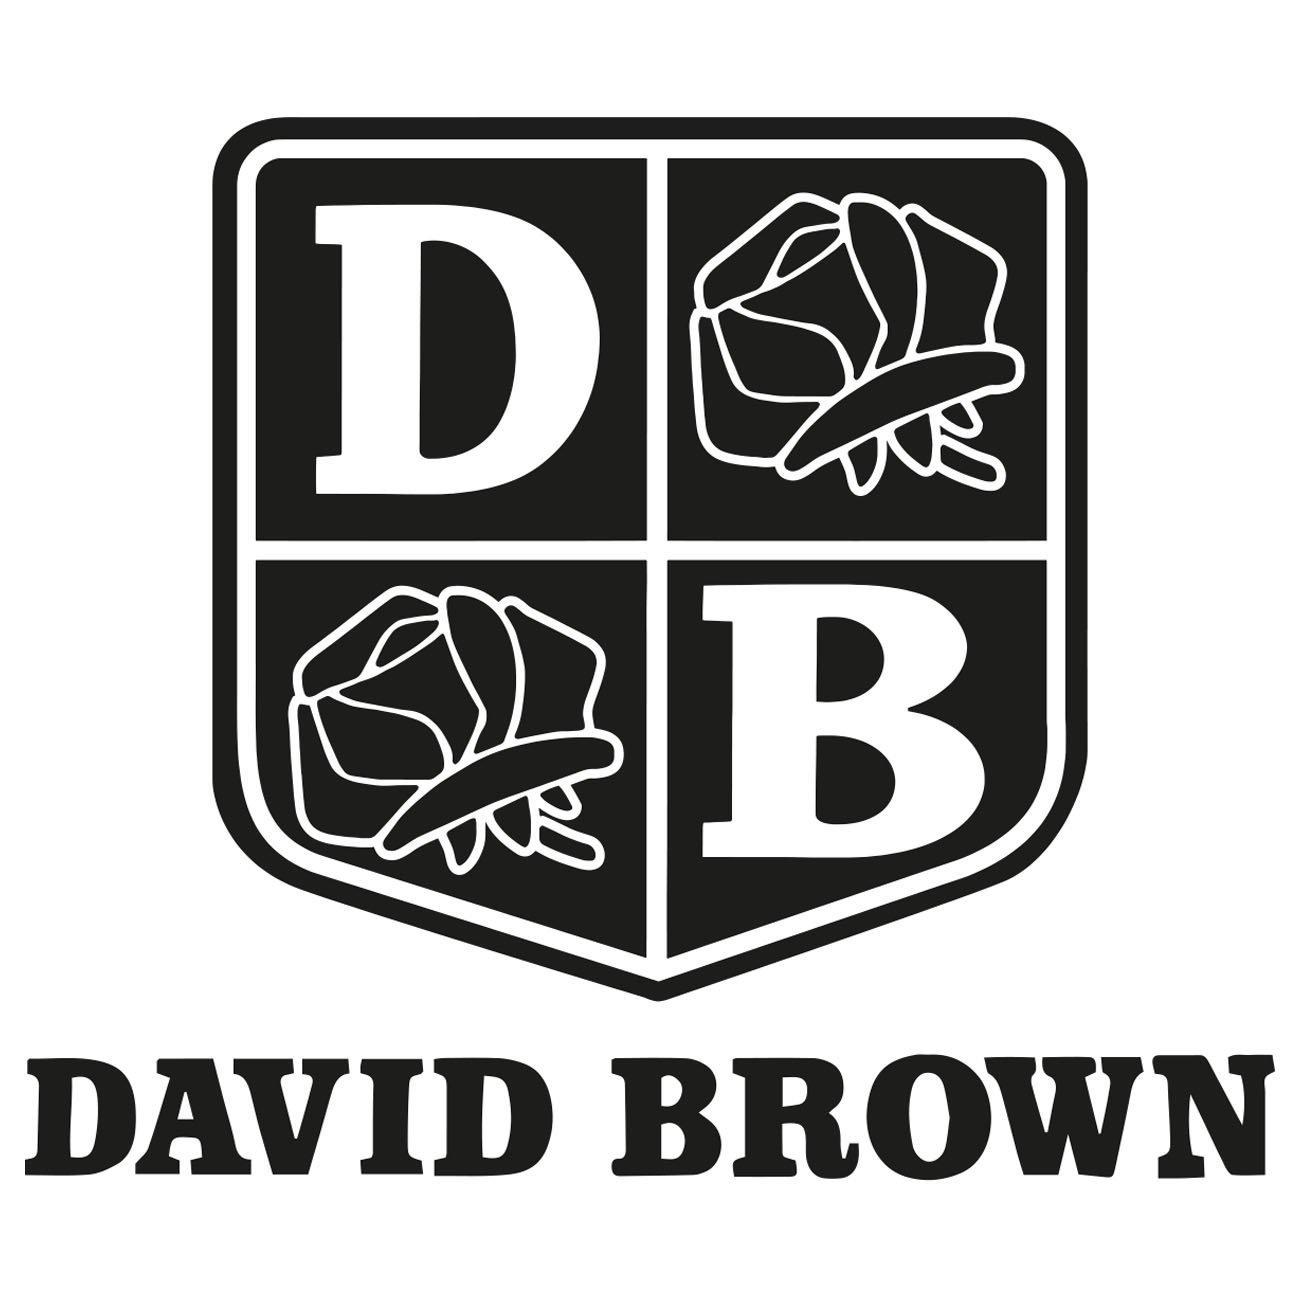 David Brown logo 2